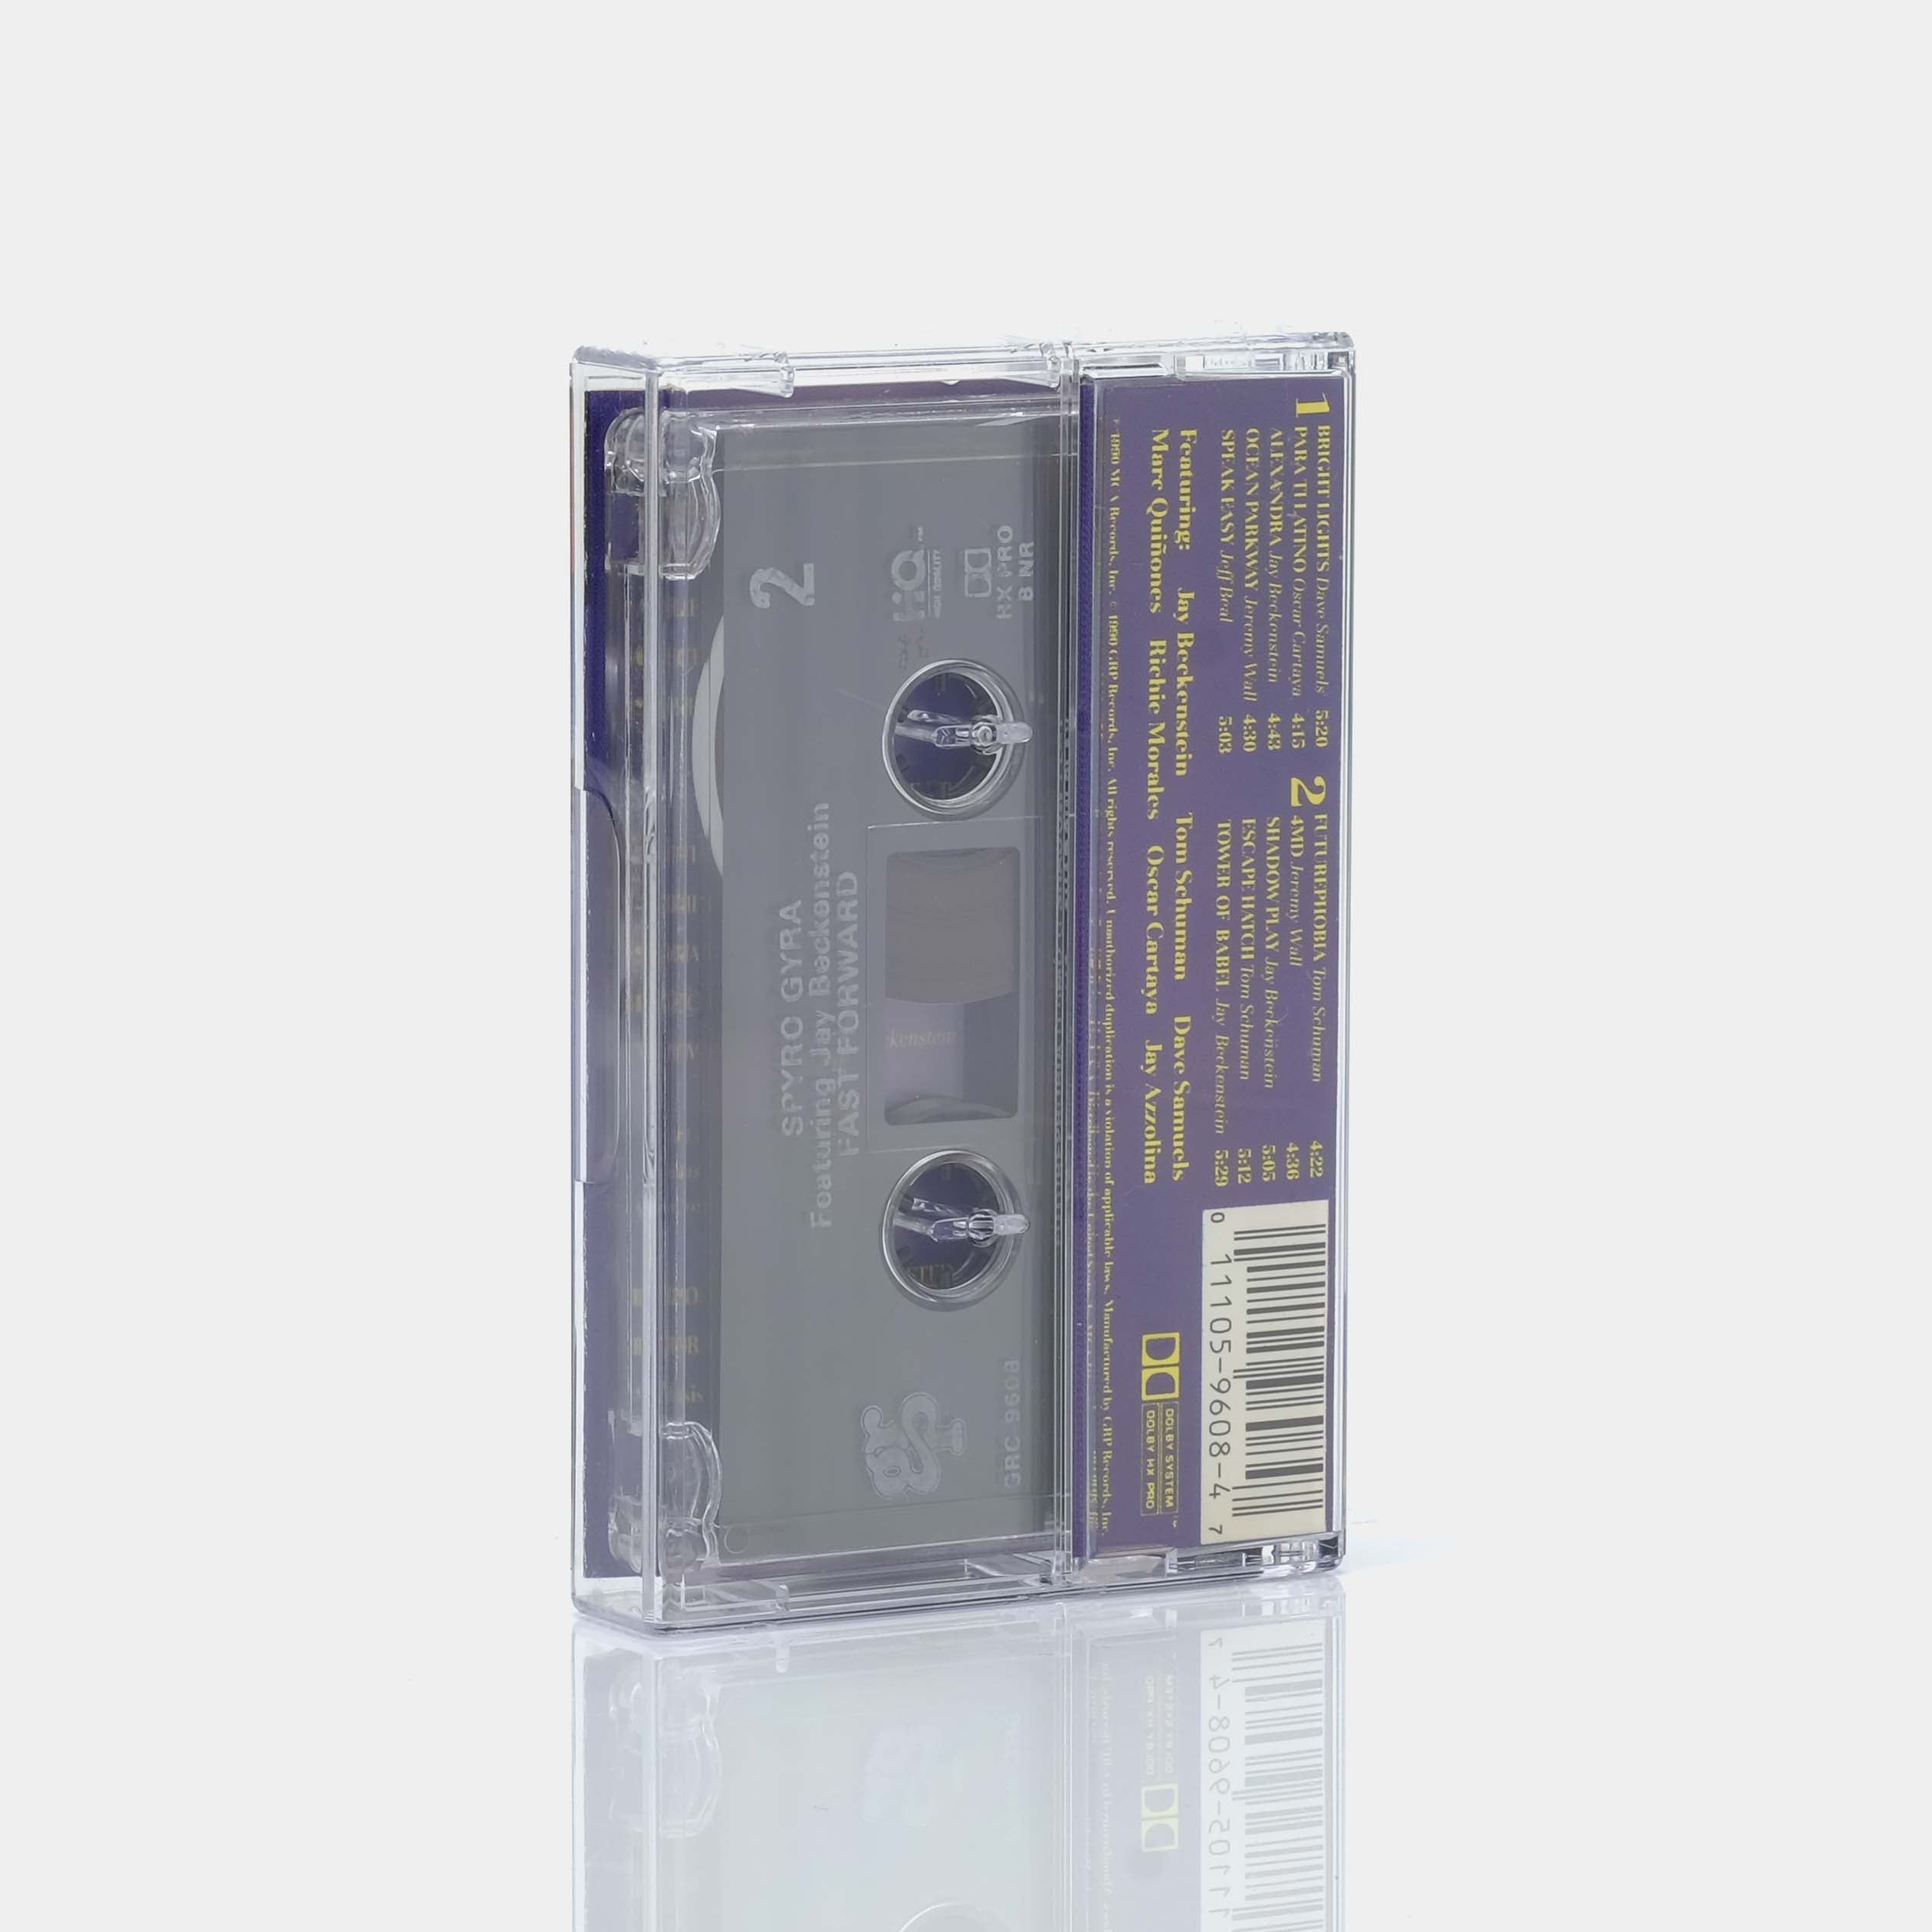 Spyro Gyra - Fast Forward Cassette Tape